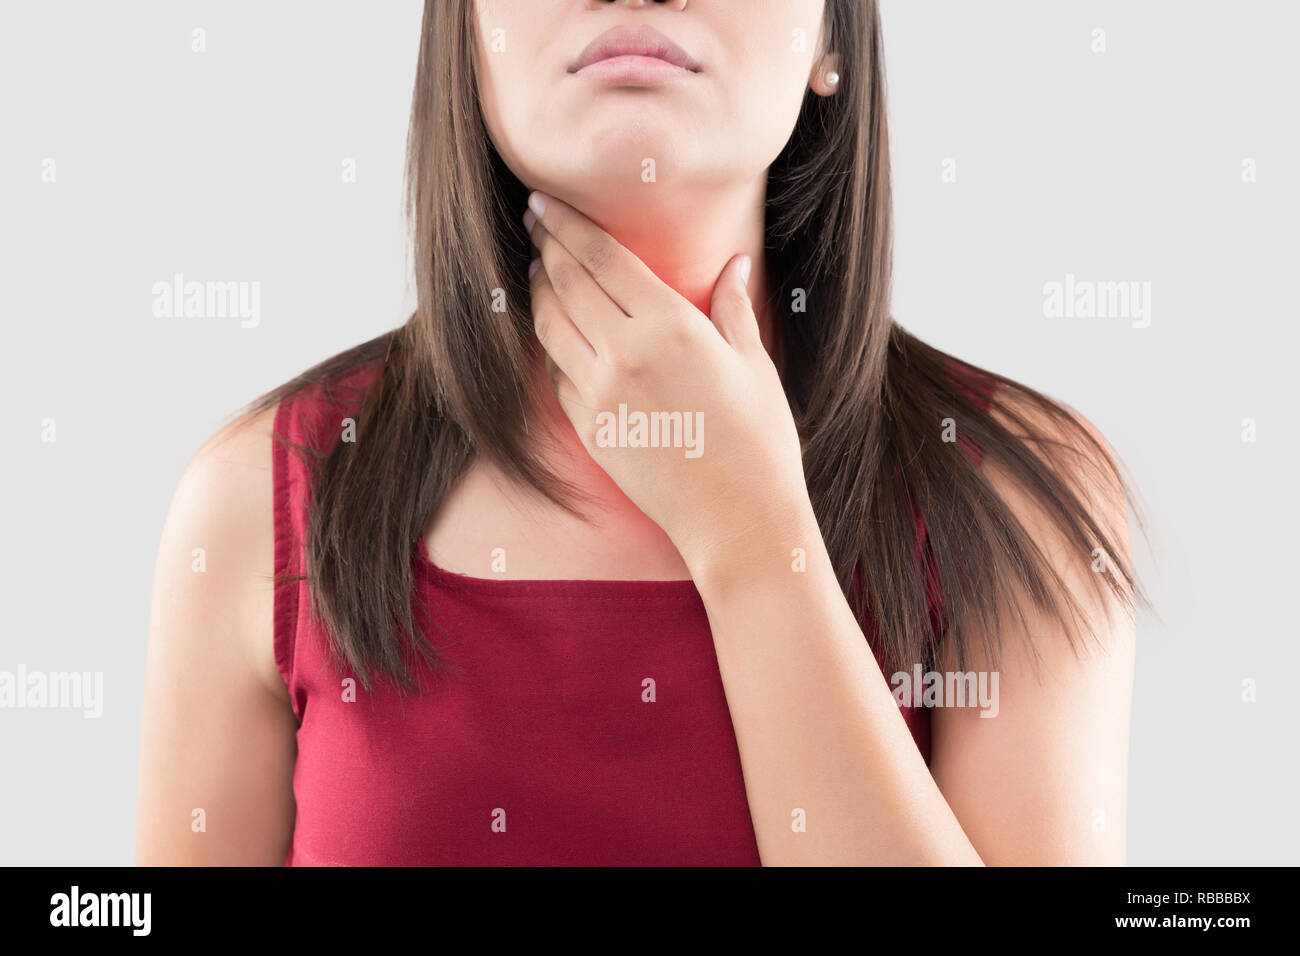 Femme Asiatique avec un mal de gorge ou de glande thyroïde contre l'arrière-plan gris. Reflux acide ou des brûlures d'estomac, douleur au cou, les gens problème corps concept Banque D'Images